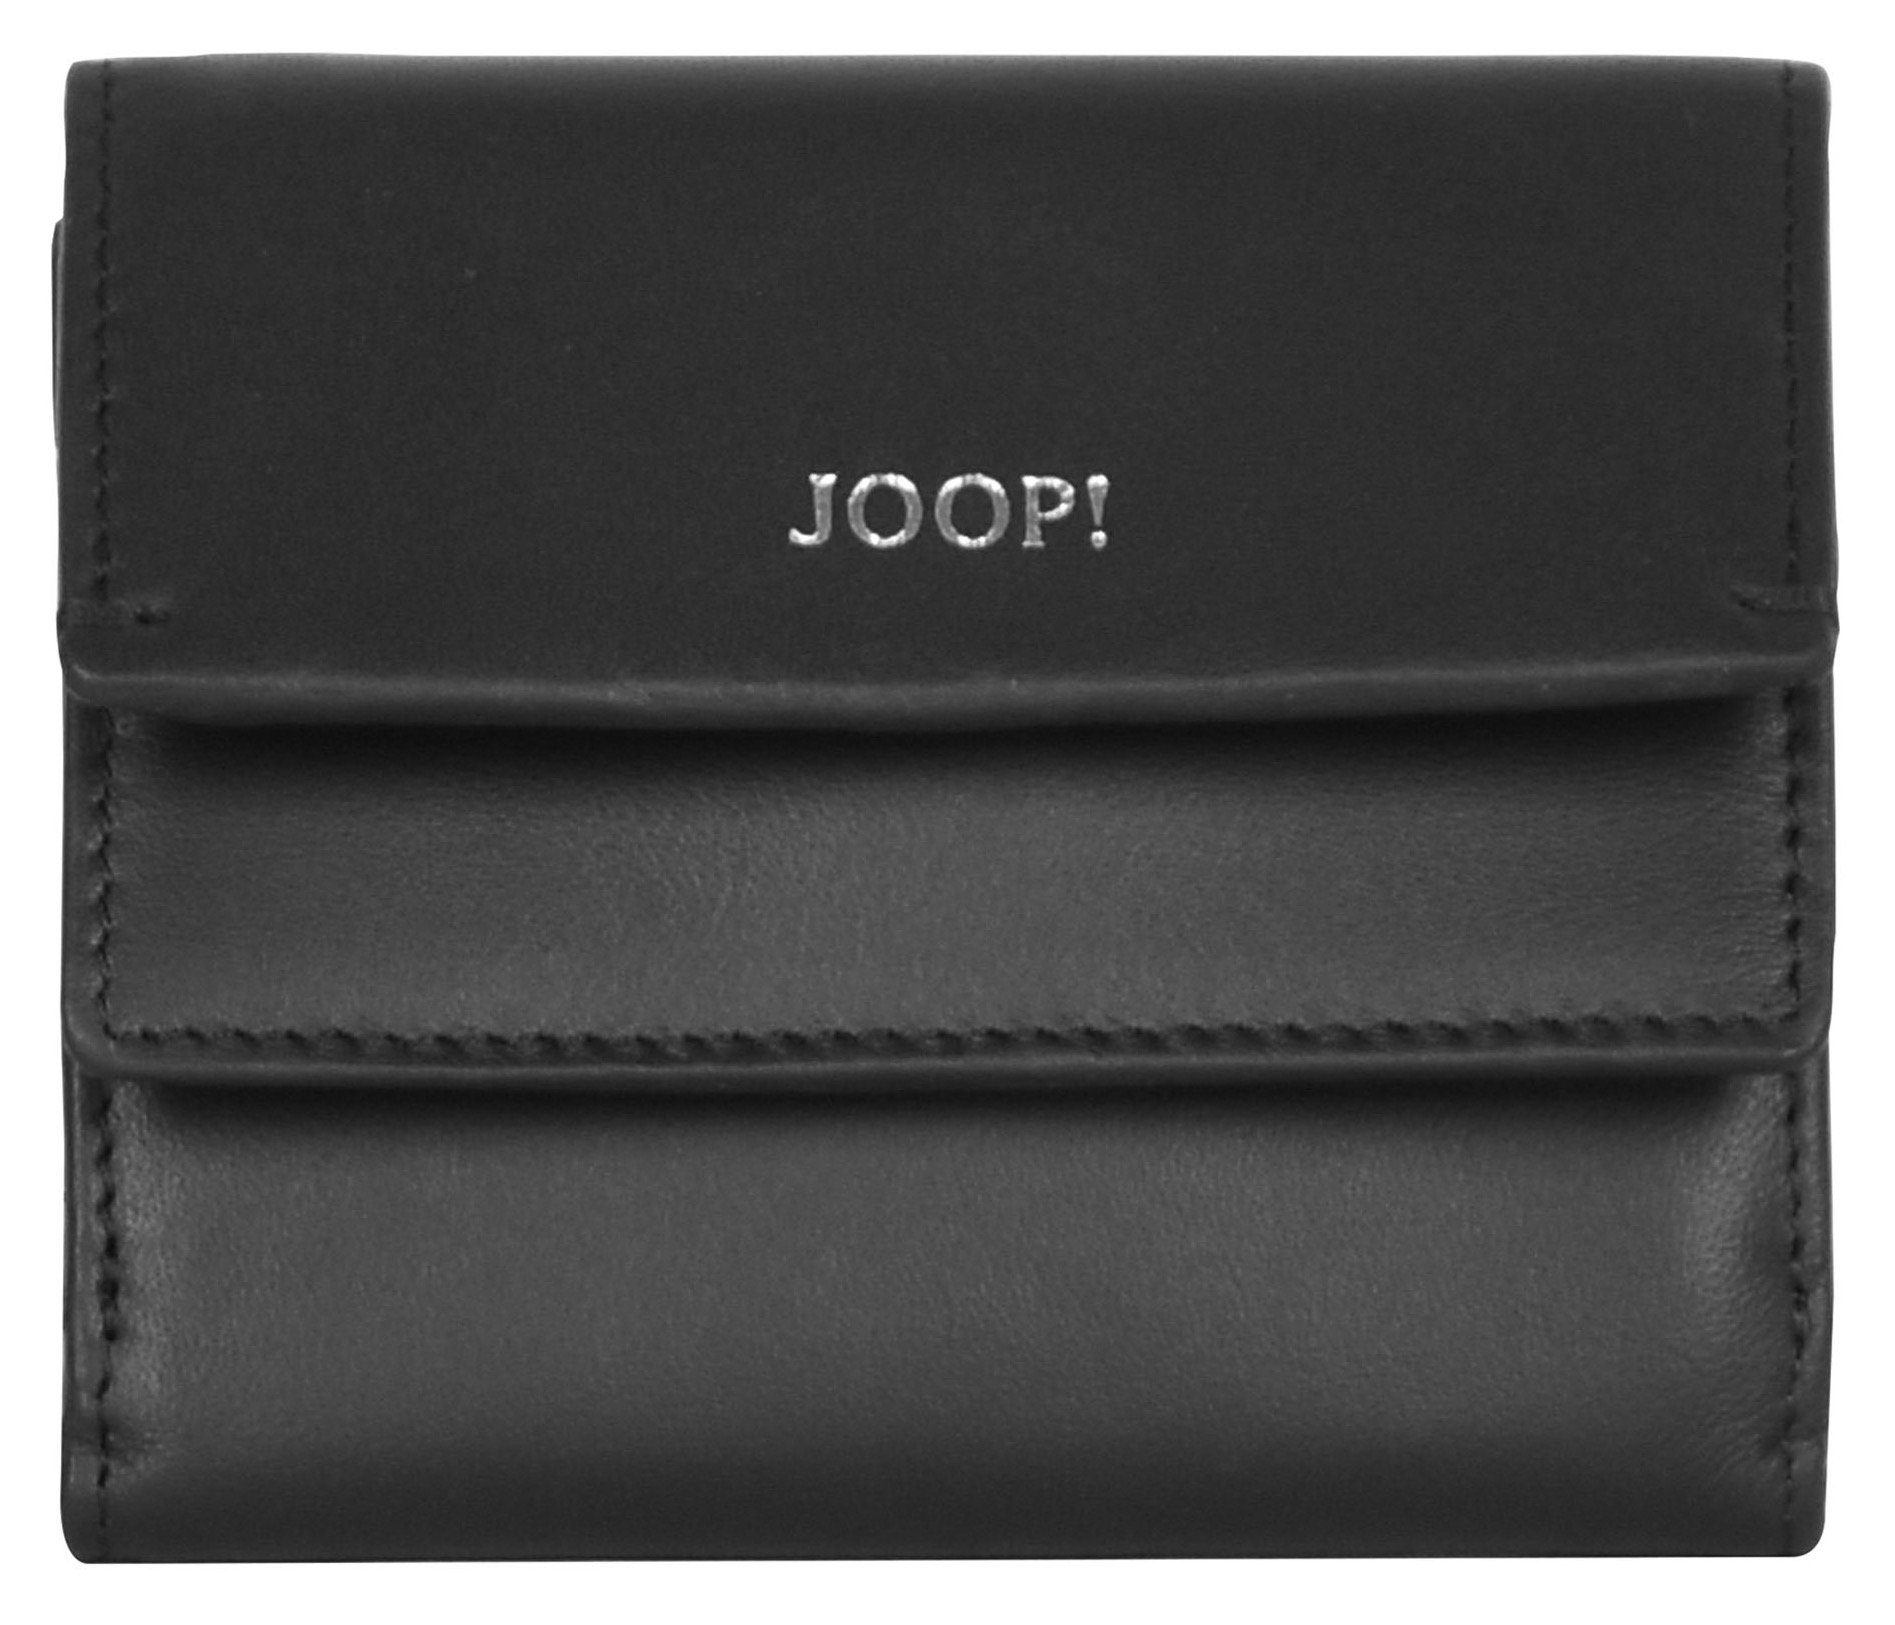 Joop! Geldbörse sofisticato 1.0 lina purse sh5f, in schlichtem Design schwarz | Geldbörsen